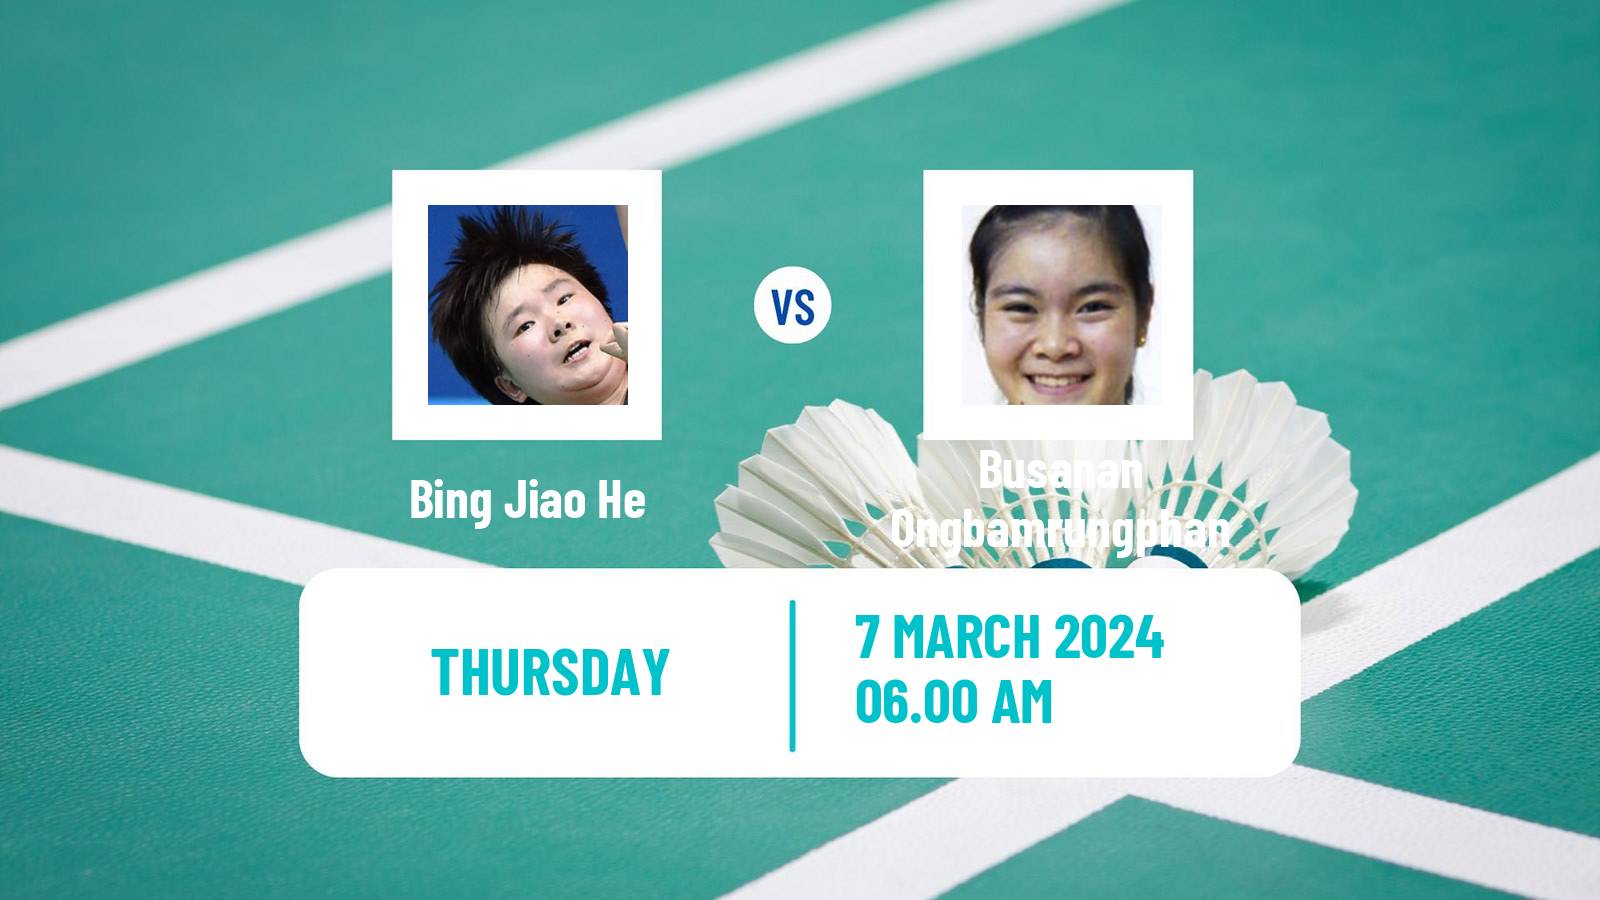 Badminton BWF World Tour French Open Women Bing Jiao He - Busanan Ongbamrungphan